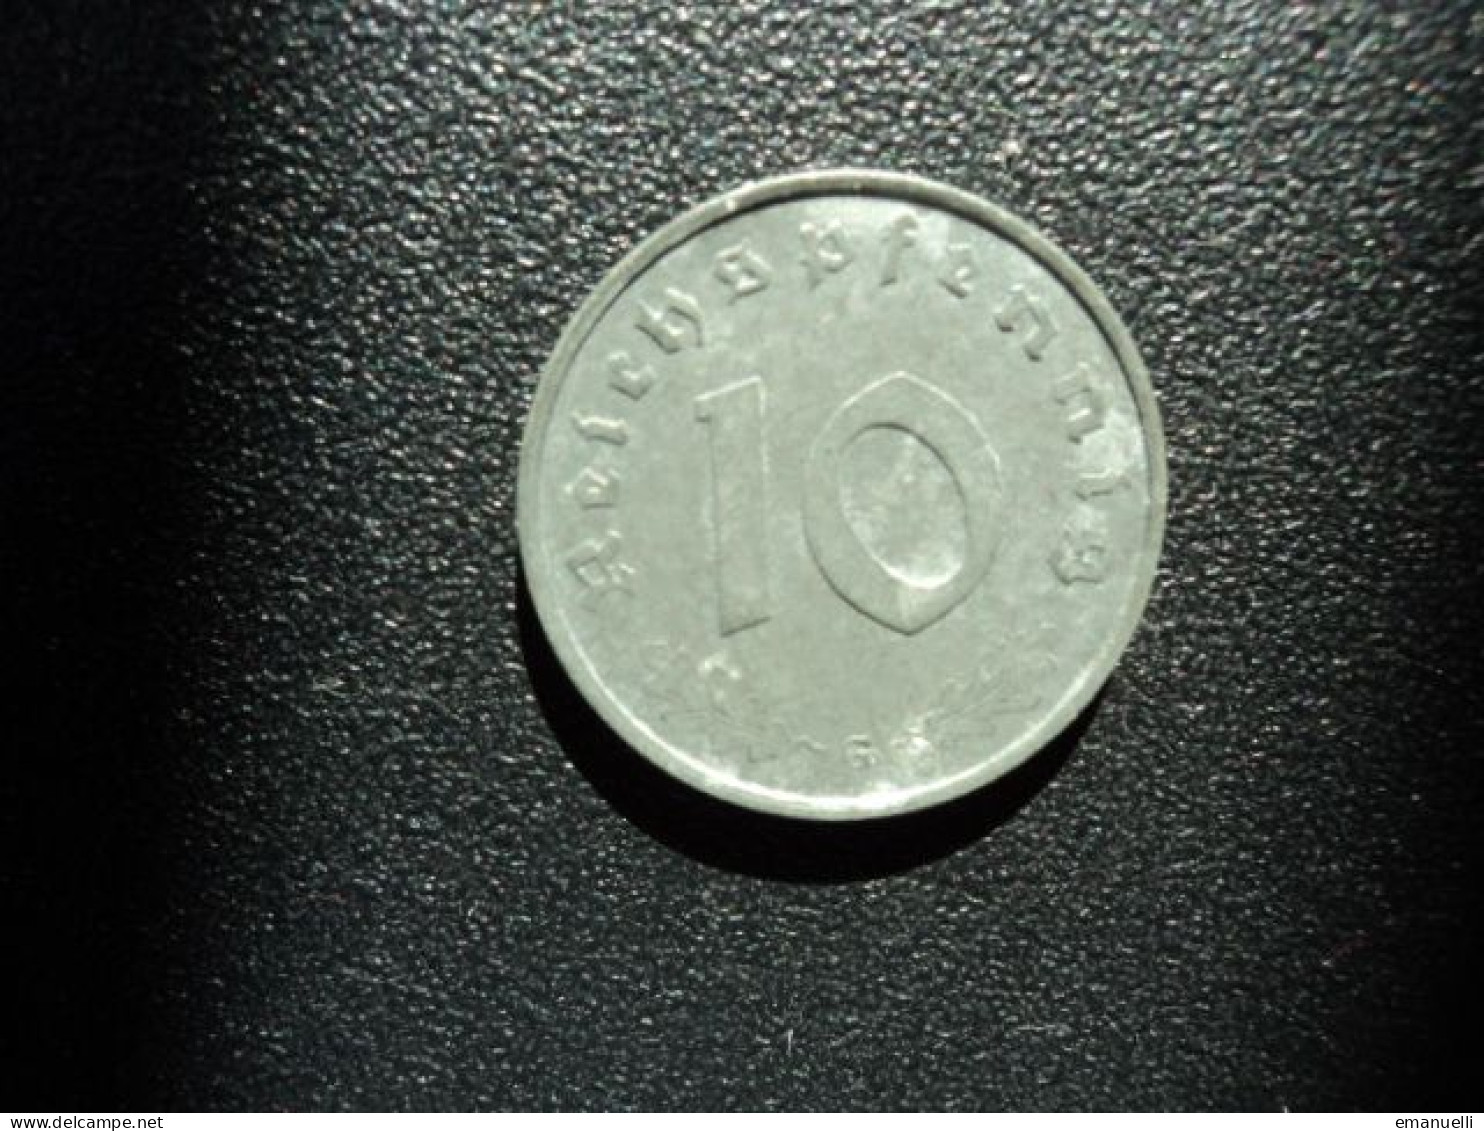 ALLEMAGNE : 10 REICHSPFENNIG   1944 G   KM 101    TB+/TTB - 10 Reichspfennig